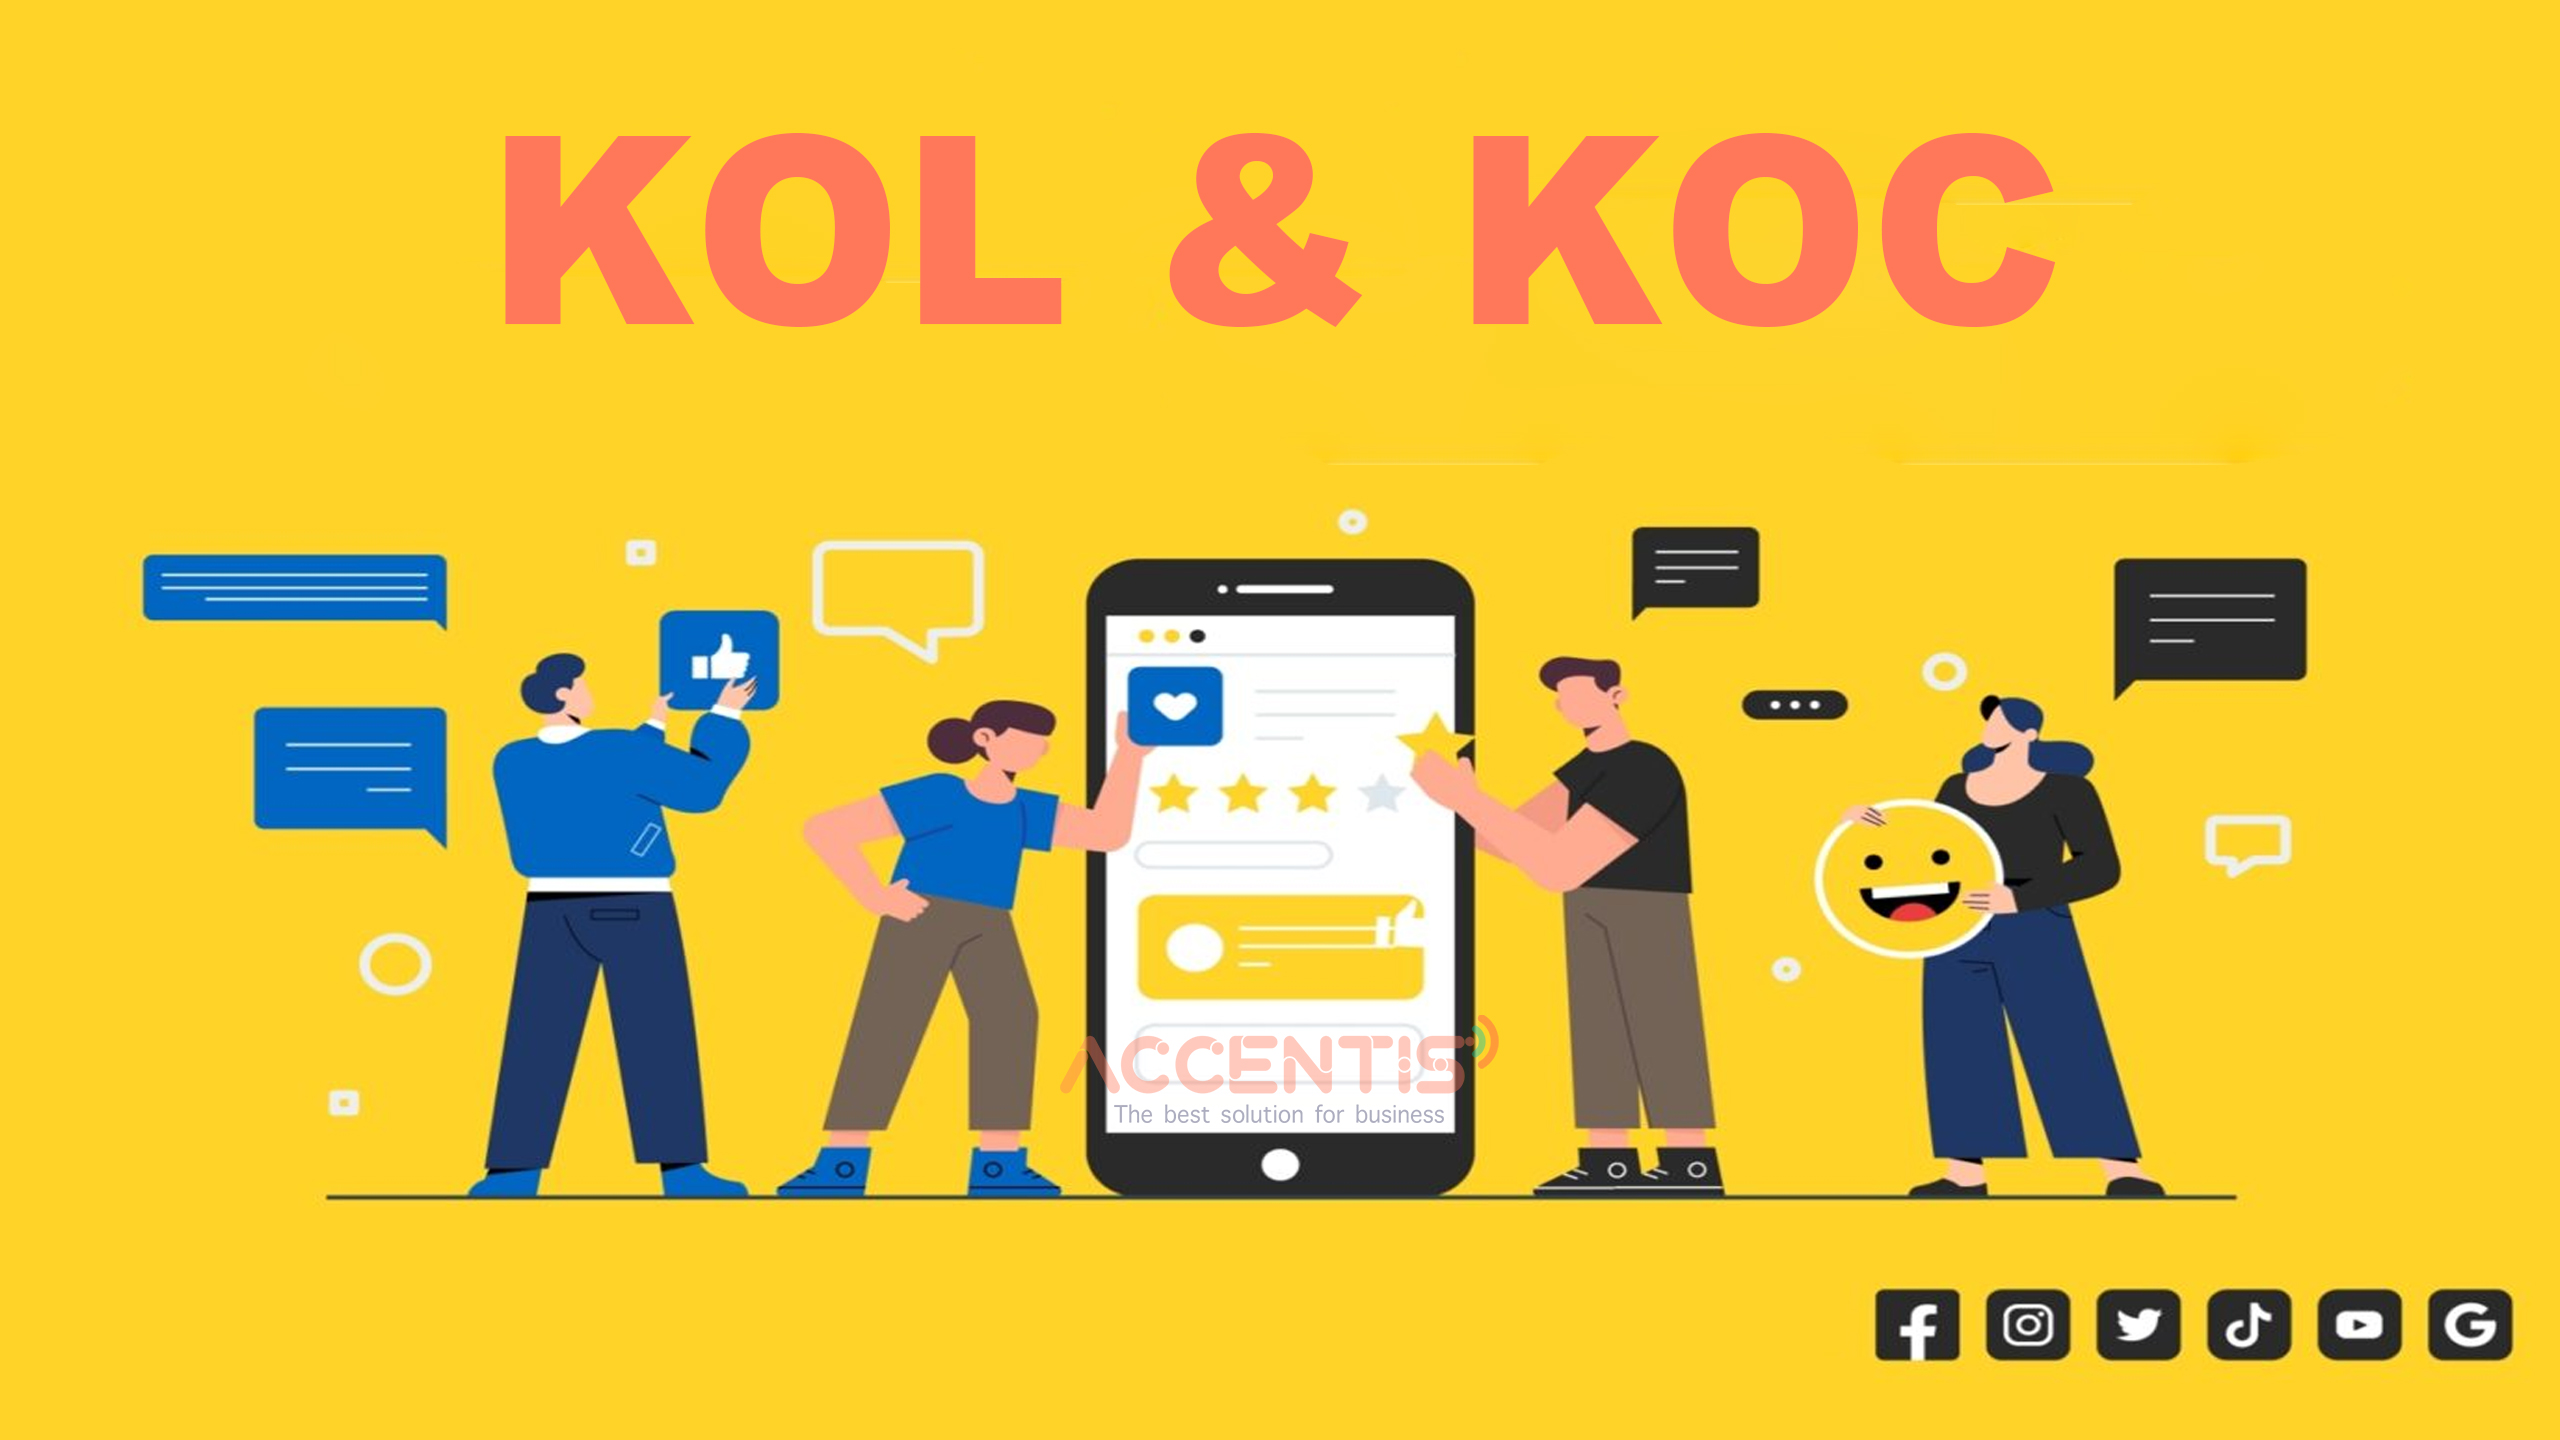 Sự khác biệt giữa KOL và KOC là về vị trí, tầm ảnh hưởng và nguyên tắc hoạt động. Cả hai đều có vai trò quan trọng trong kinh doanh online và có thể được tận dụng để nâng cao hiệu quả tiếp thị và tiếp cận khách hàng.